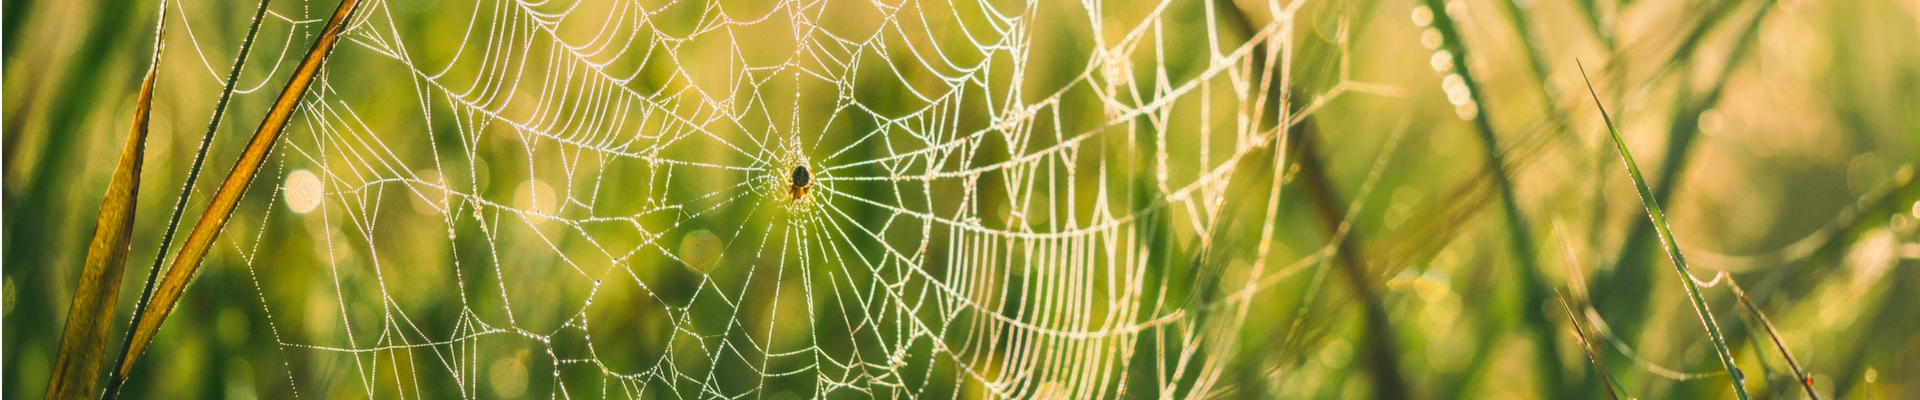 spider-web-banner_1920x400